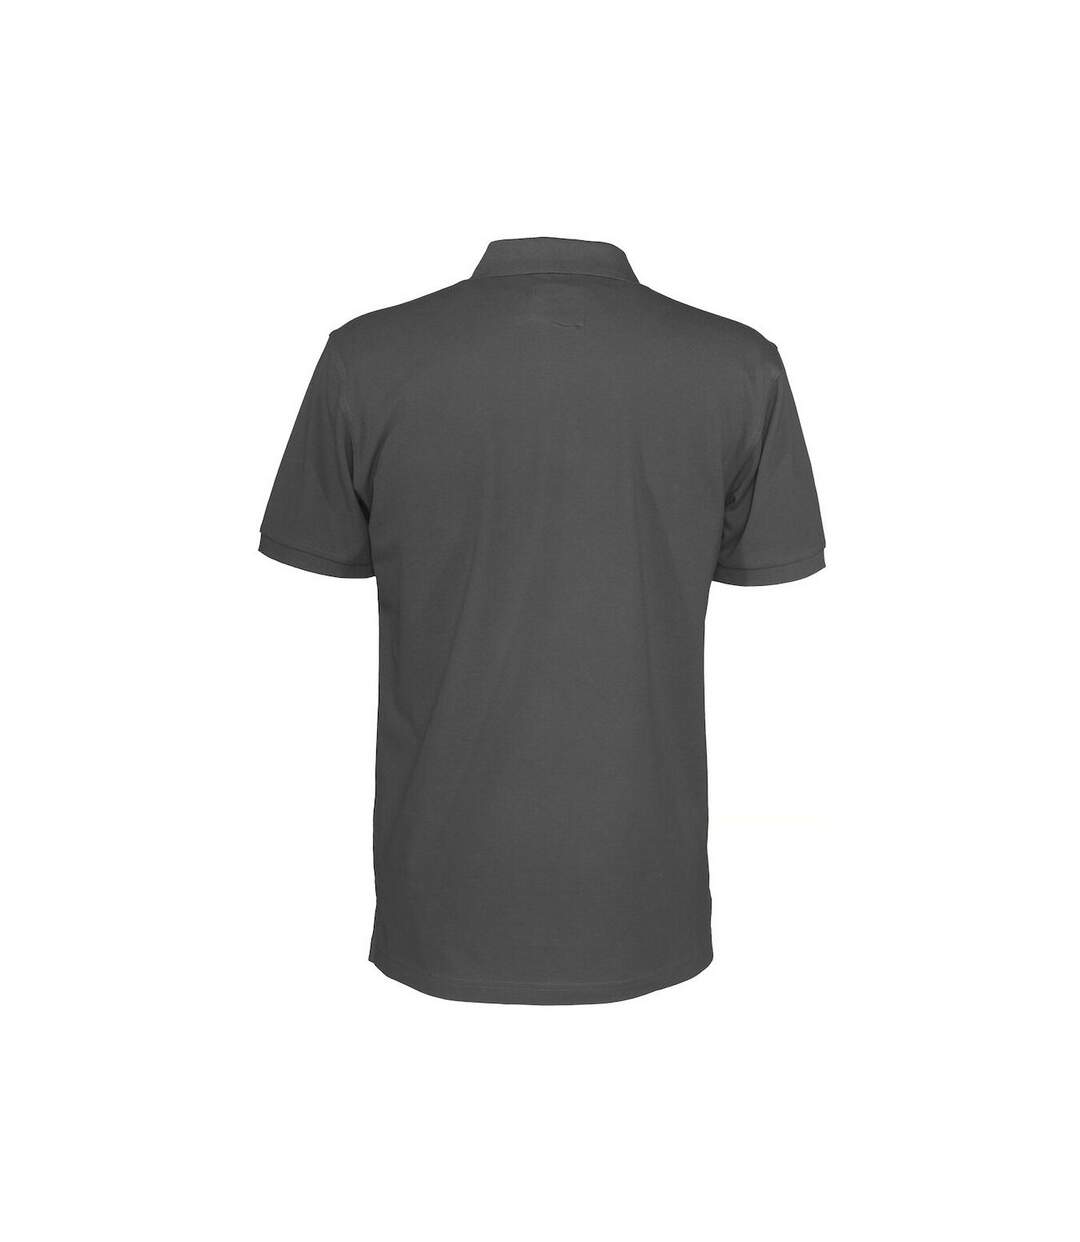 Clique Mens Pique Polo Shirt (Charcoal)